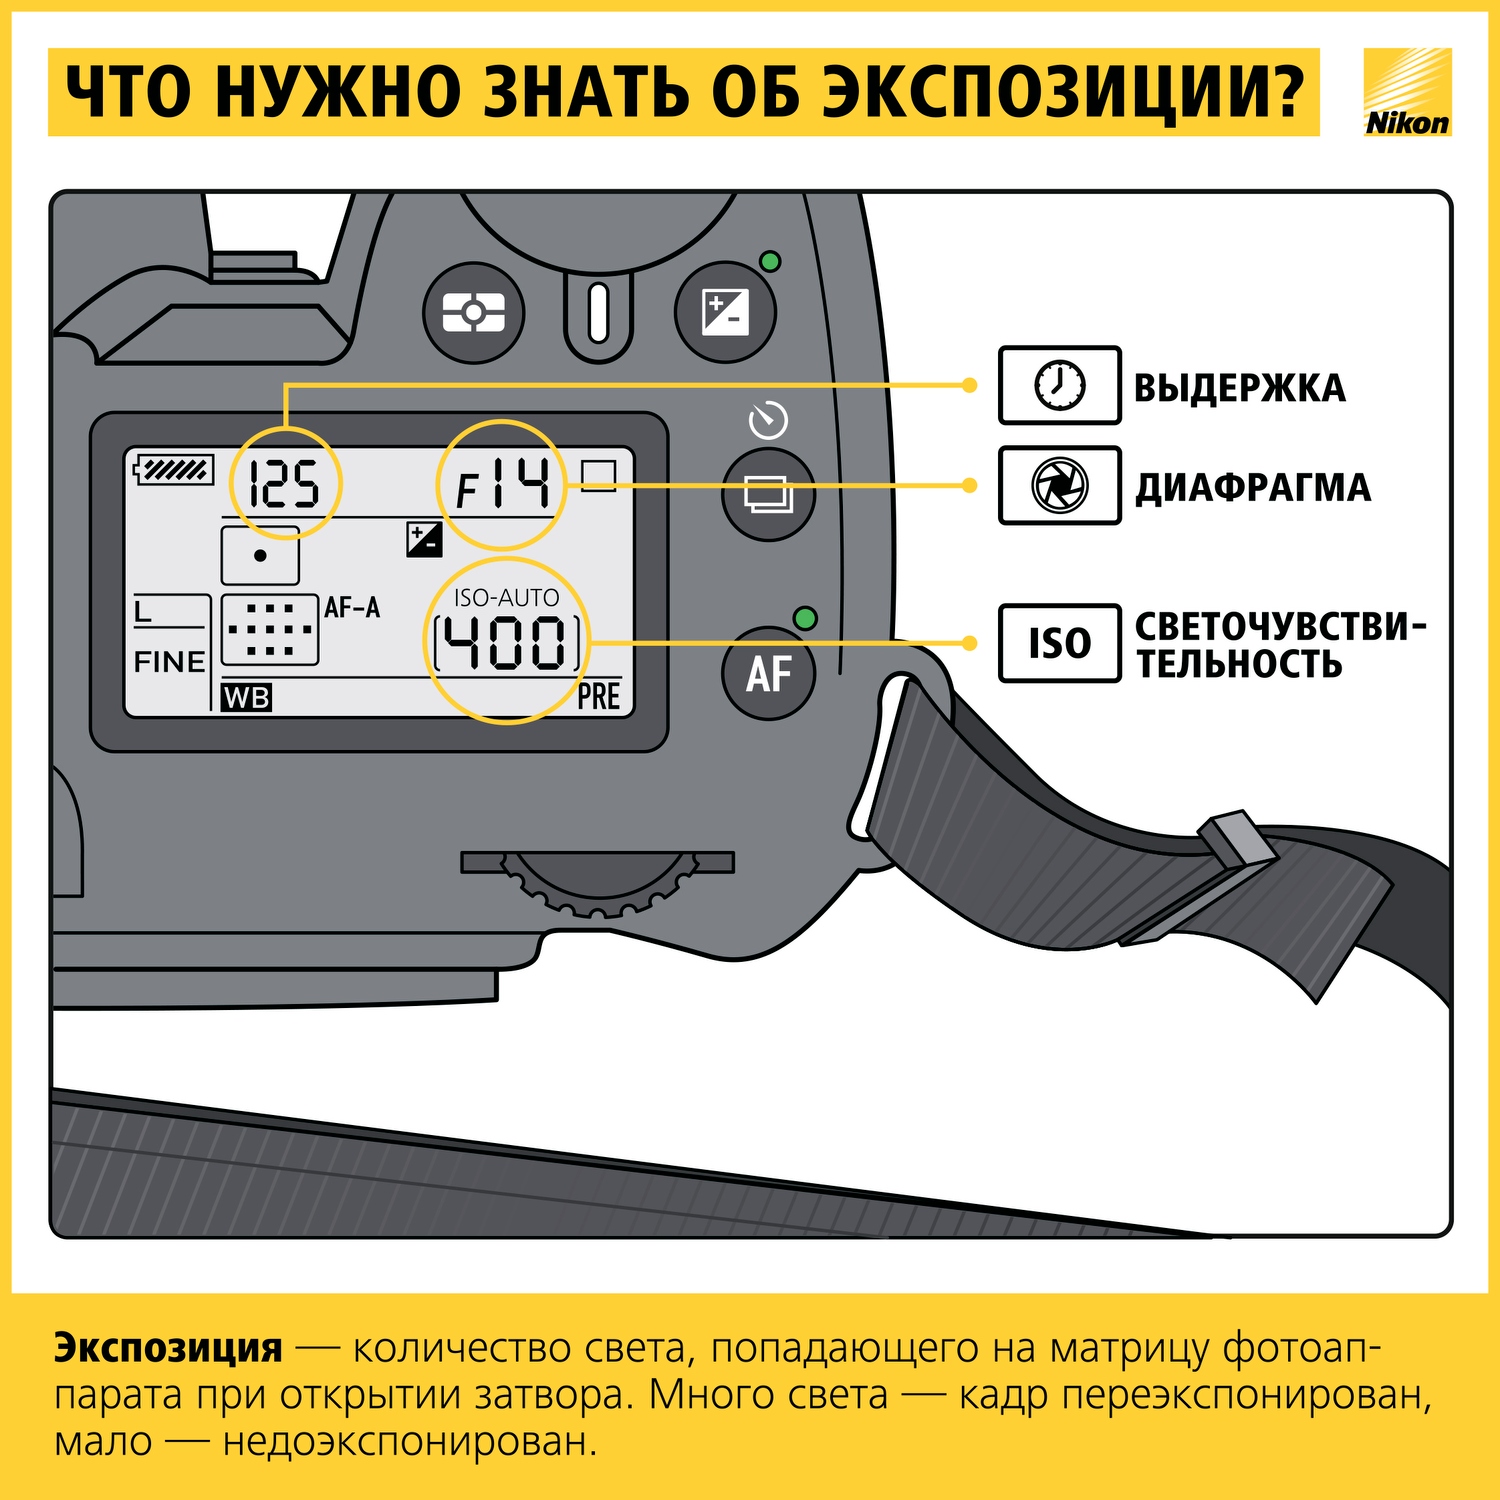 Как научиться фотографировать: пошаговая инструкция от Nikon Info_nikon_02